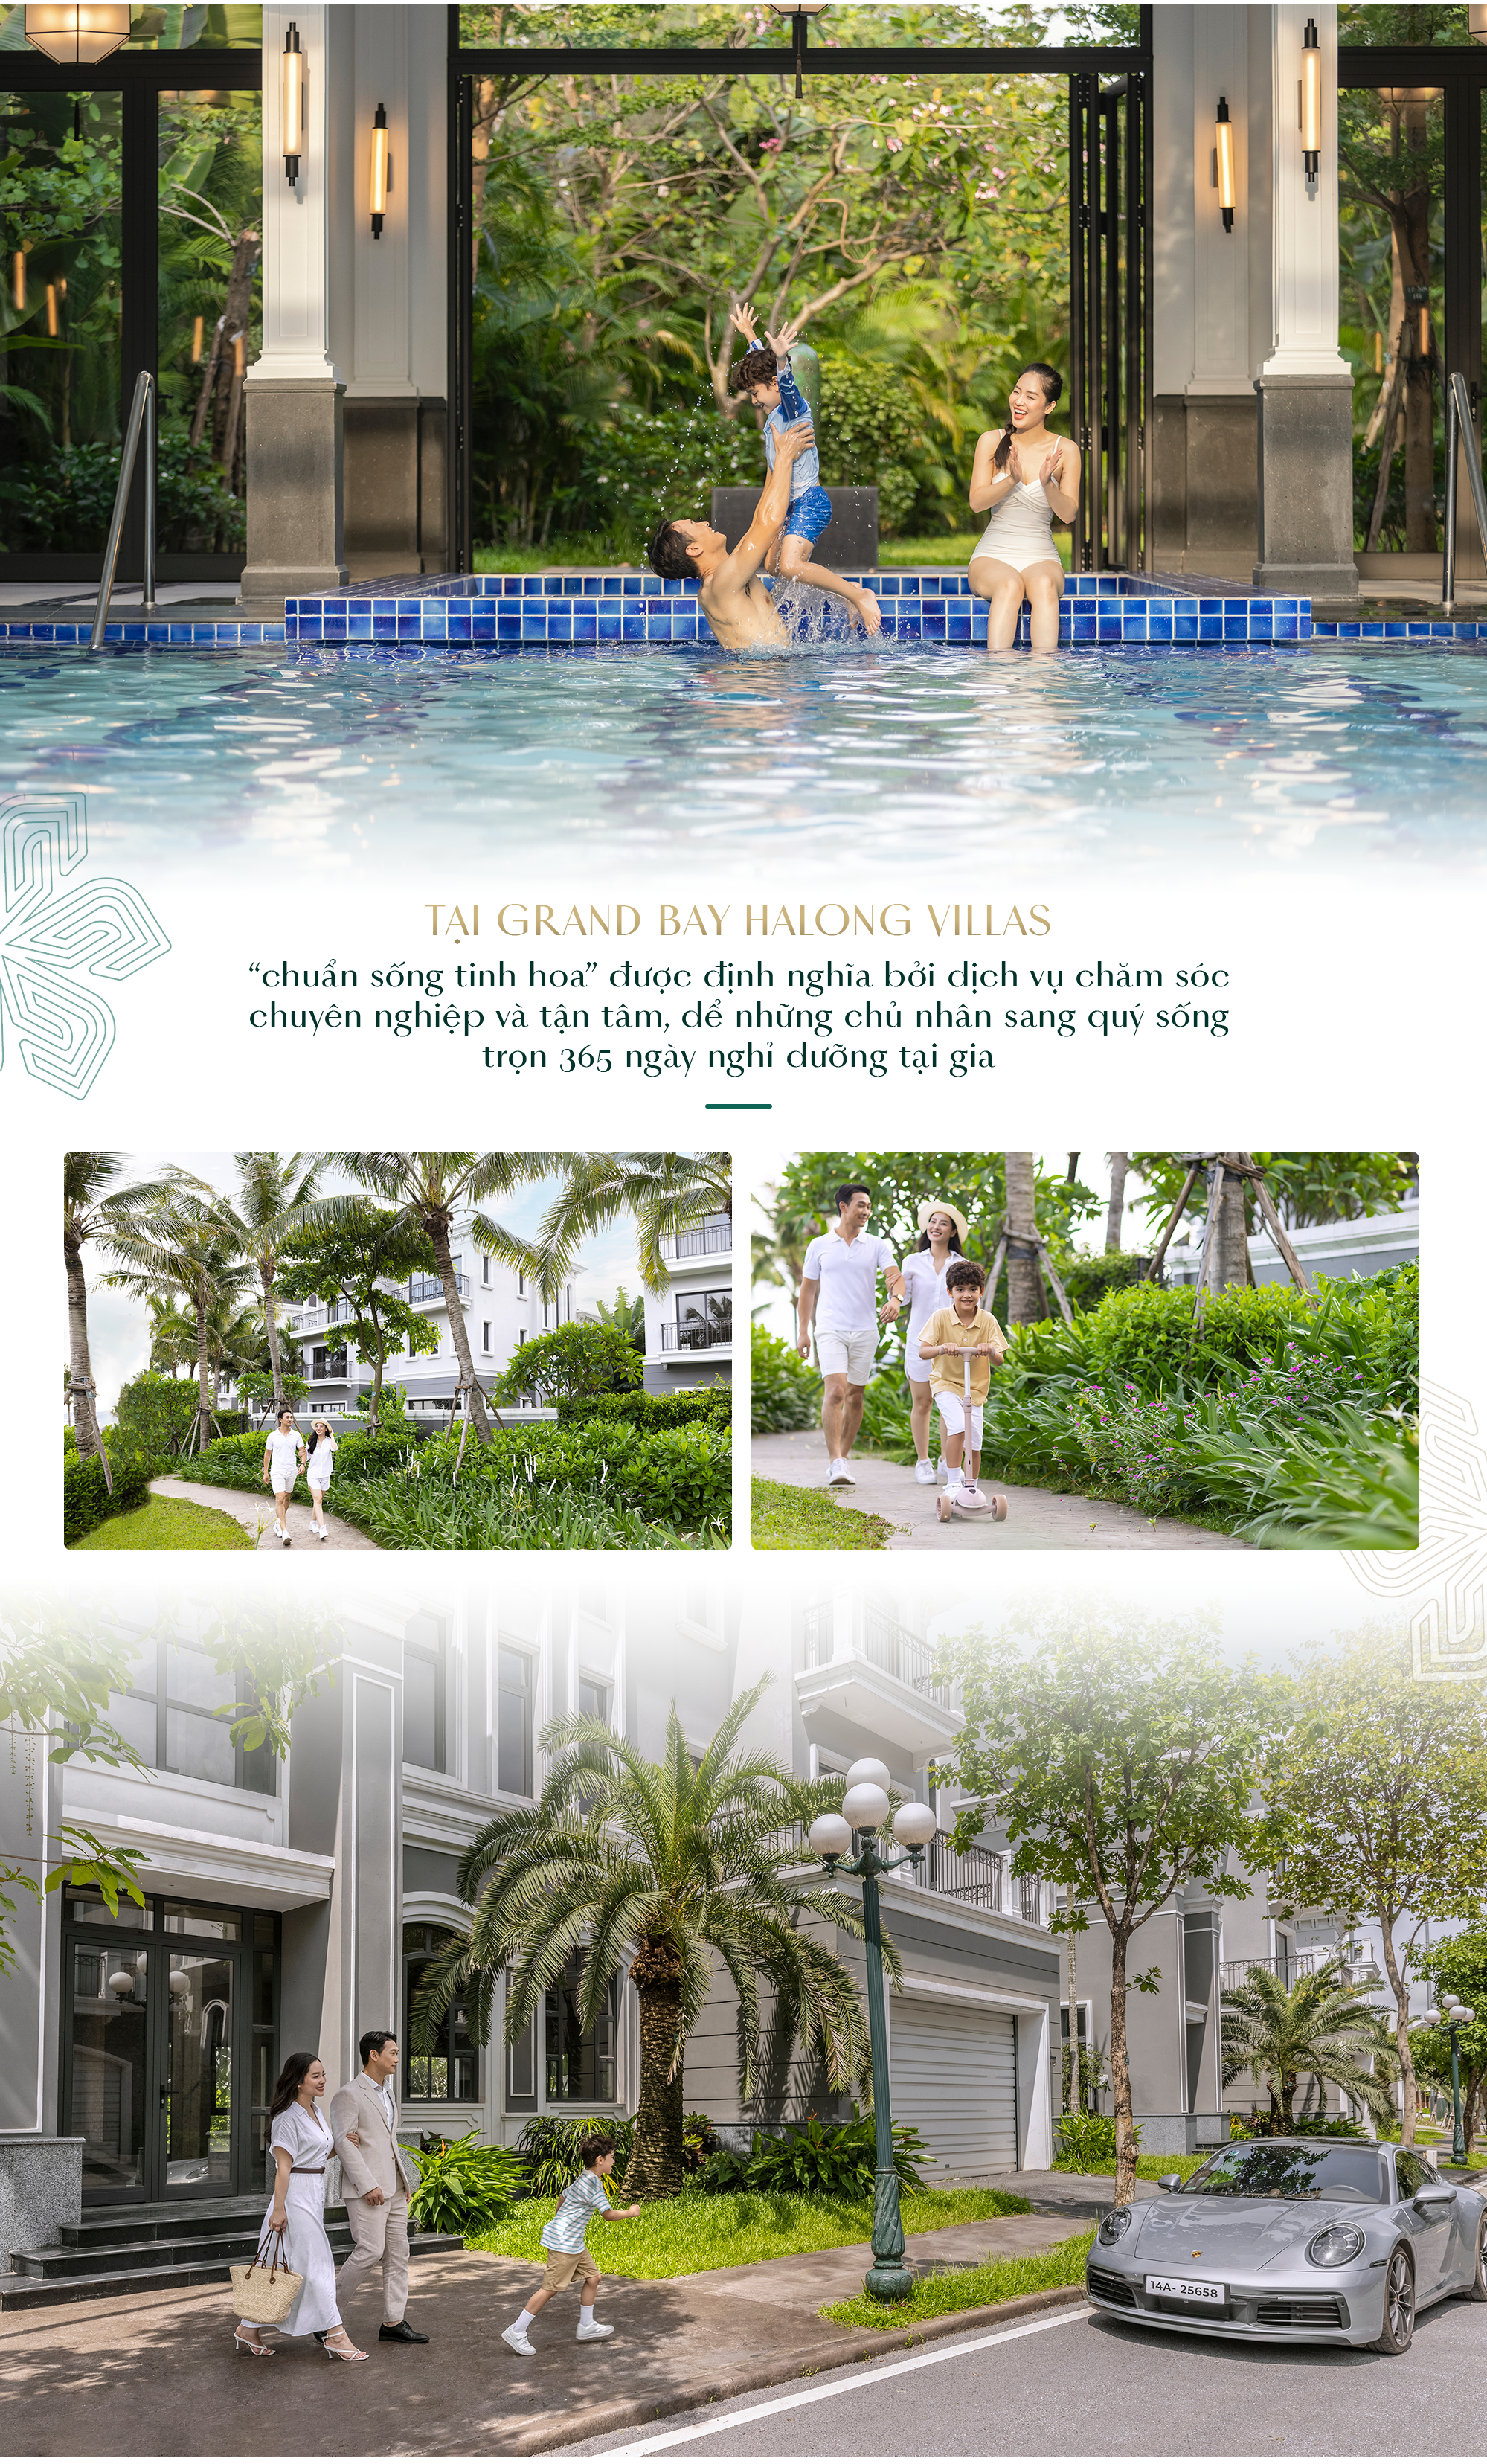 Grand Bay Halong Villas: Bến đỗ của phong cách sống Resort living sang trọng bên vịnh biển - Ảnh 11.